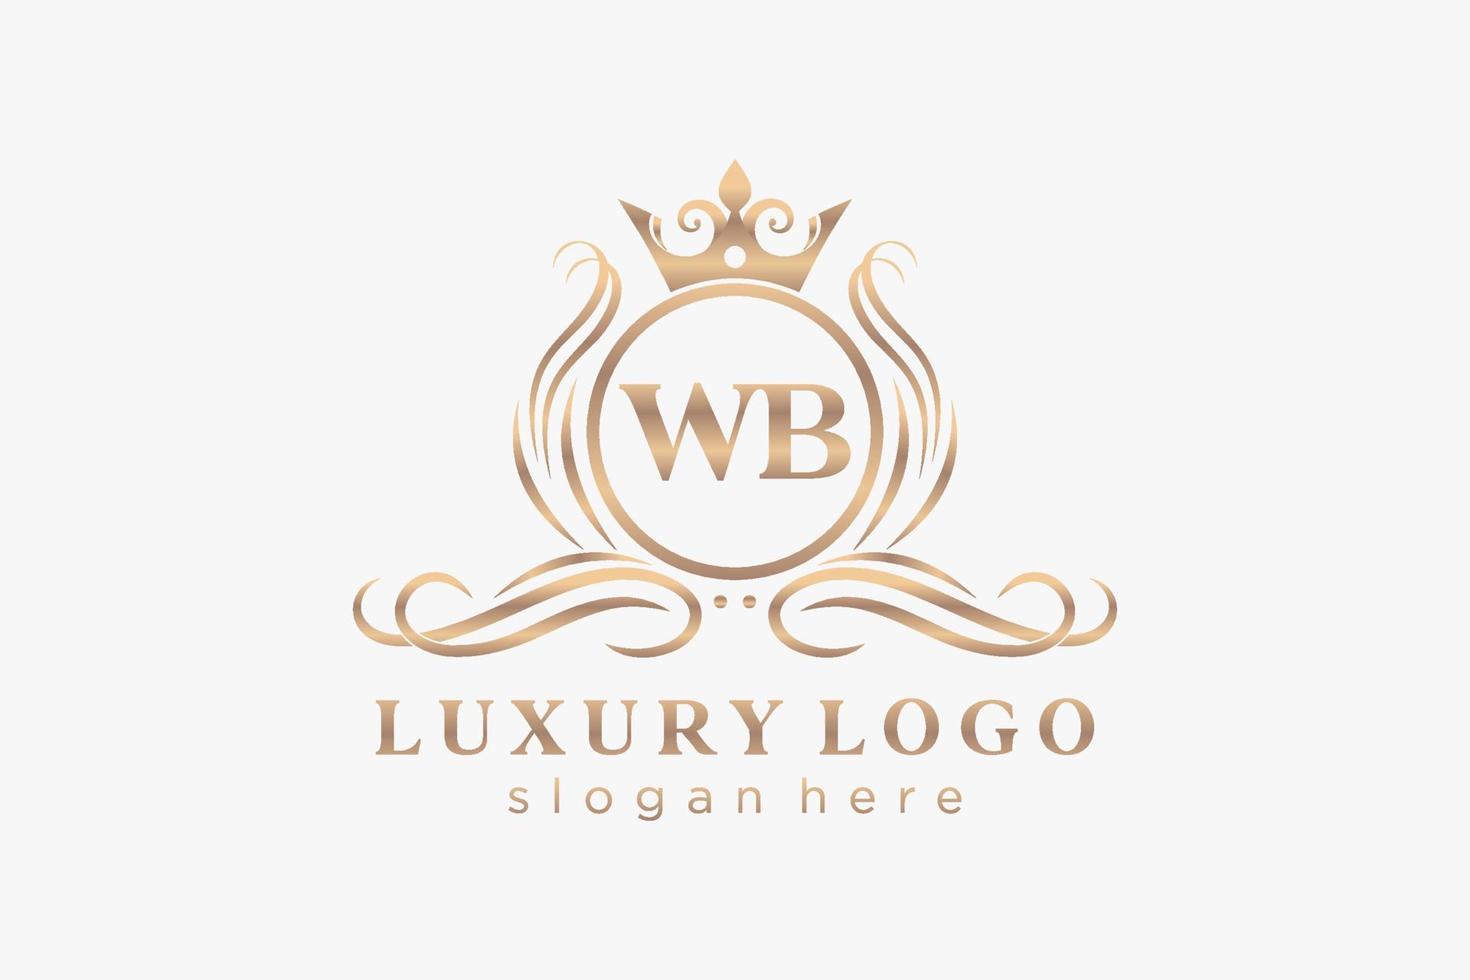 Anfangsbuchstabe Royal Luxury Logo Vorlage in Vektorgrafiken für Restaurant, Lizenzgebühren, Boutique, Café, Hotel, heraldisch, Schmuck, Mode und andere Vektorillustrationen. vektor